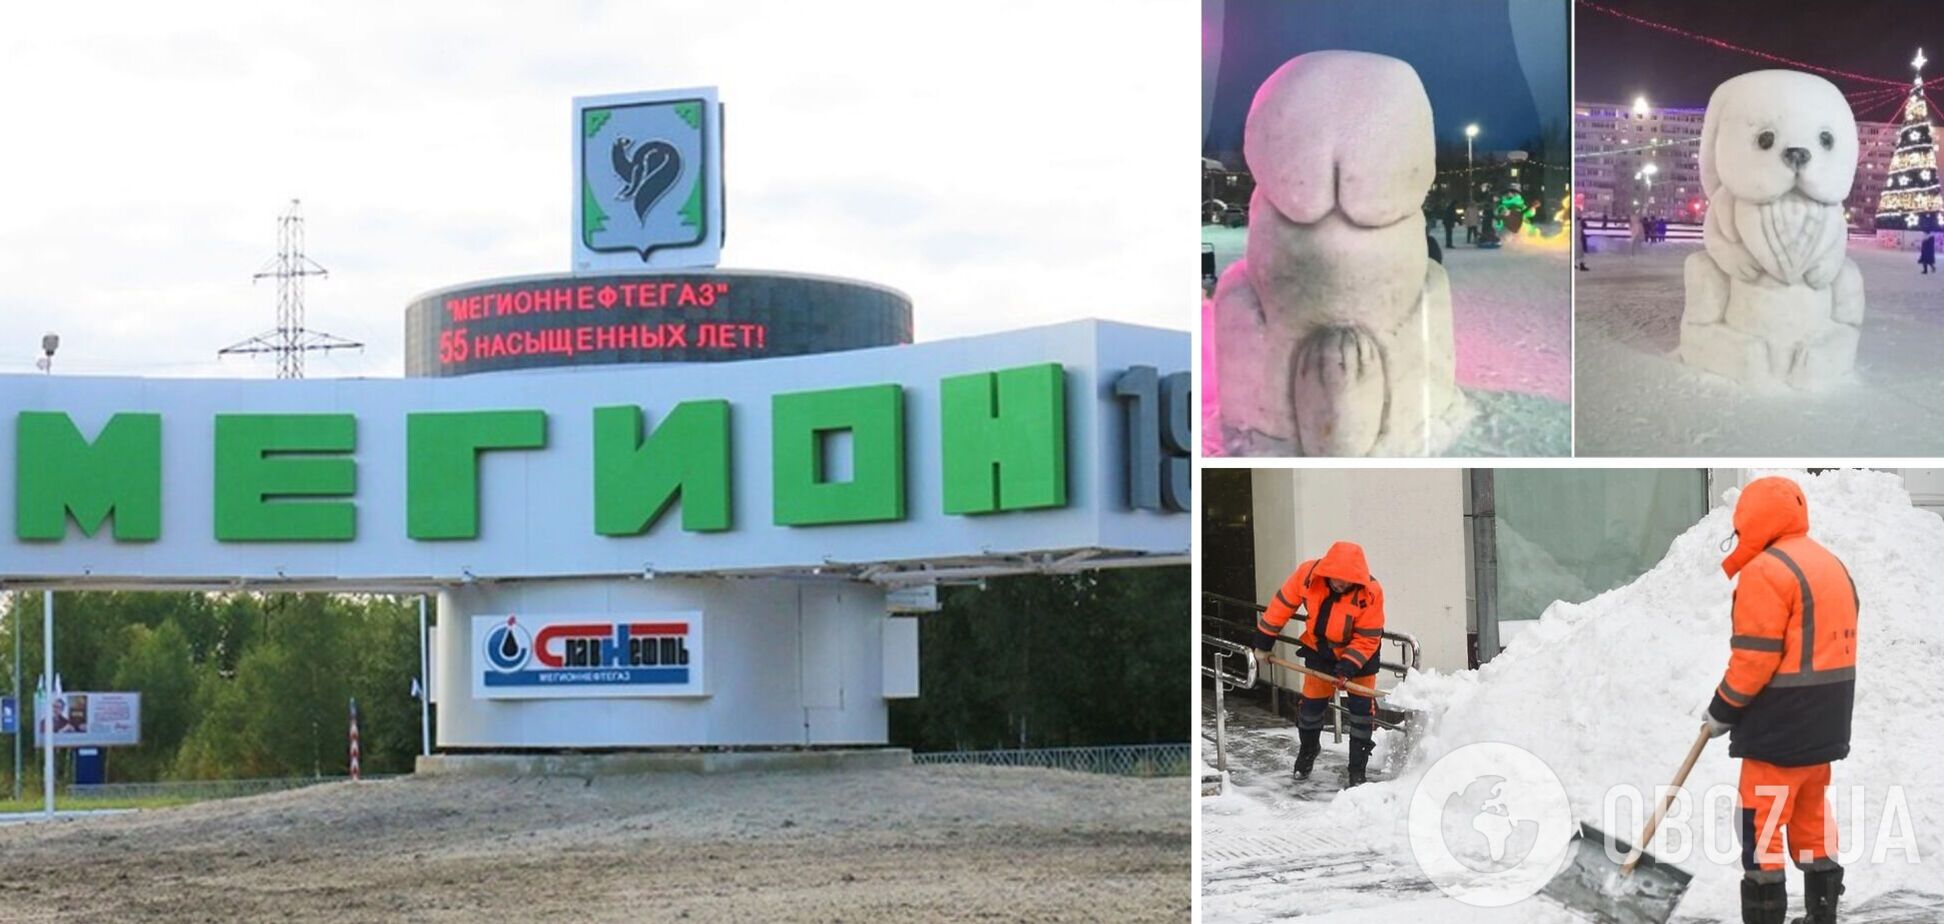 У Росії розгорівся скандал через 'пікантну' фігуру снігового зайця: фото розбурхало мережу